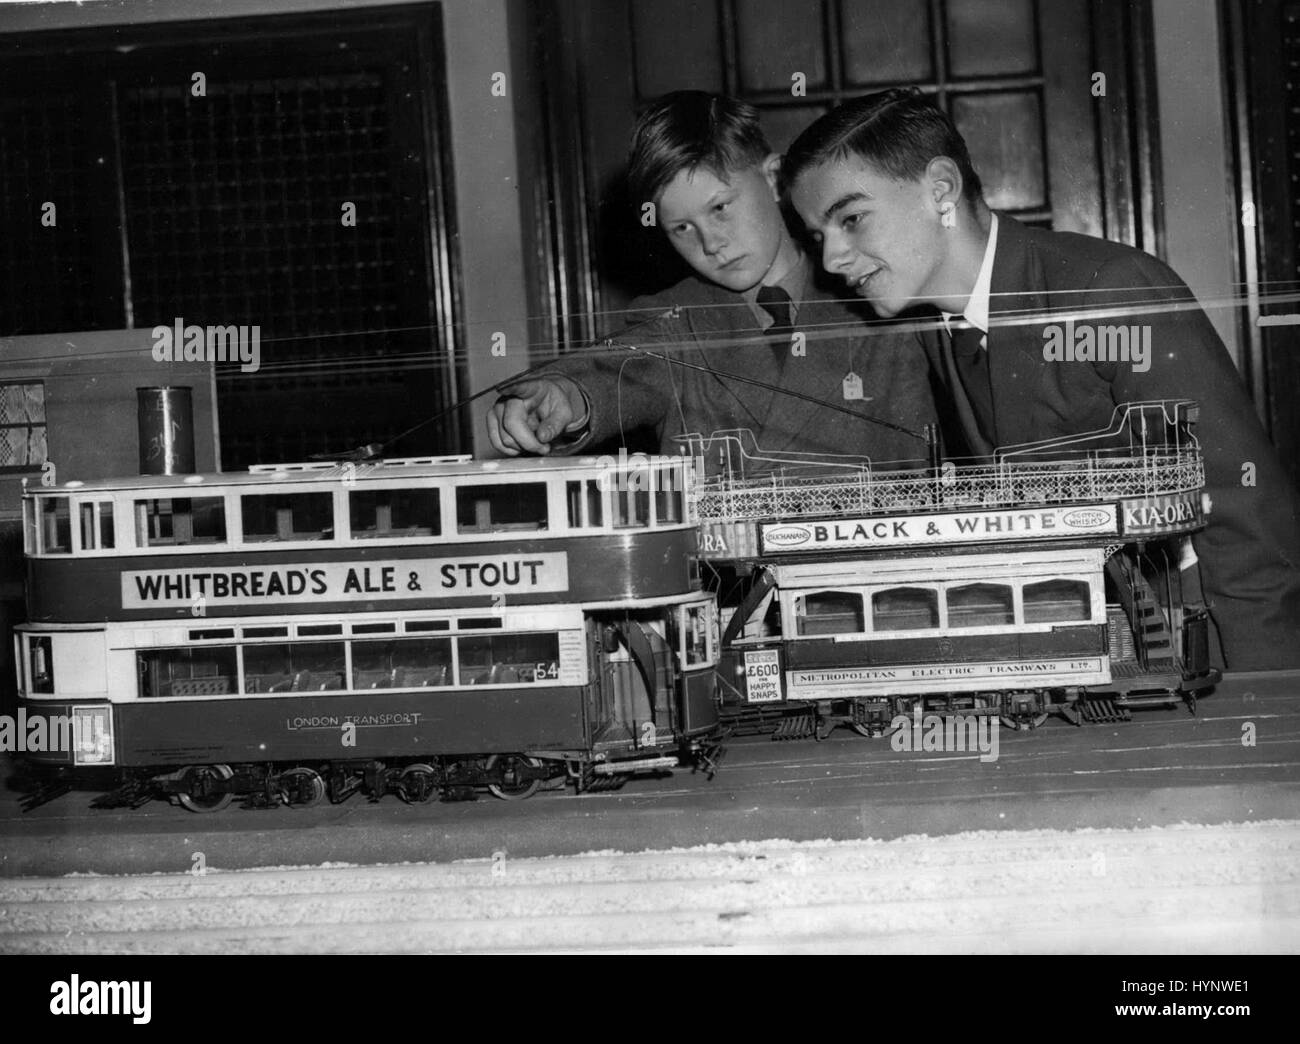 Apr. 04, 1957 - Apertura del modello ferroviario Antica Fiera Tram.: Clive Ewen (10) di Crowthorn, Berks - e Reginald Davis (14) di Streatham - ammirando i modelli di (sinistra) a Londra Trasporti Tram - e sulla destra un antico Metropolitan tram elettrico - presso la stazione ferroviaria di modello mostra che si terrà presso il salone centrale di Westminster. (Credito Immagine: © Keystone Press Agency/Keystone USA via ZUMAPRESS.com) Foto Stock